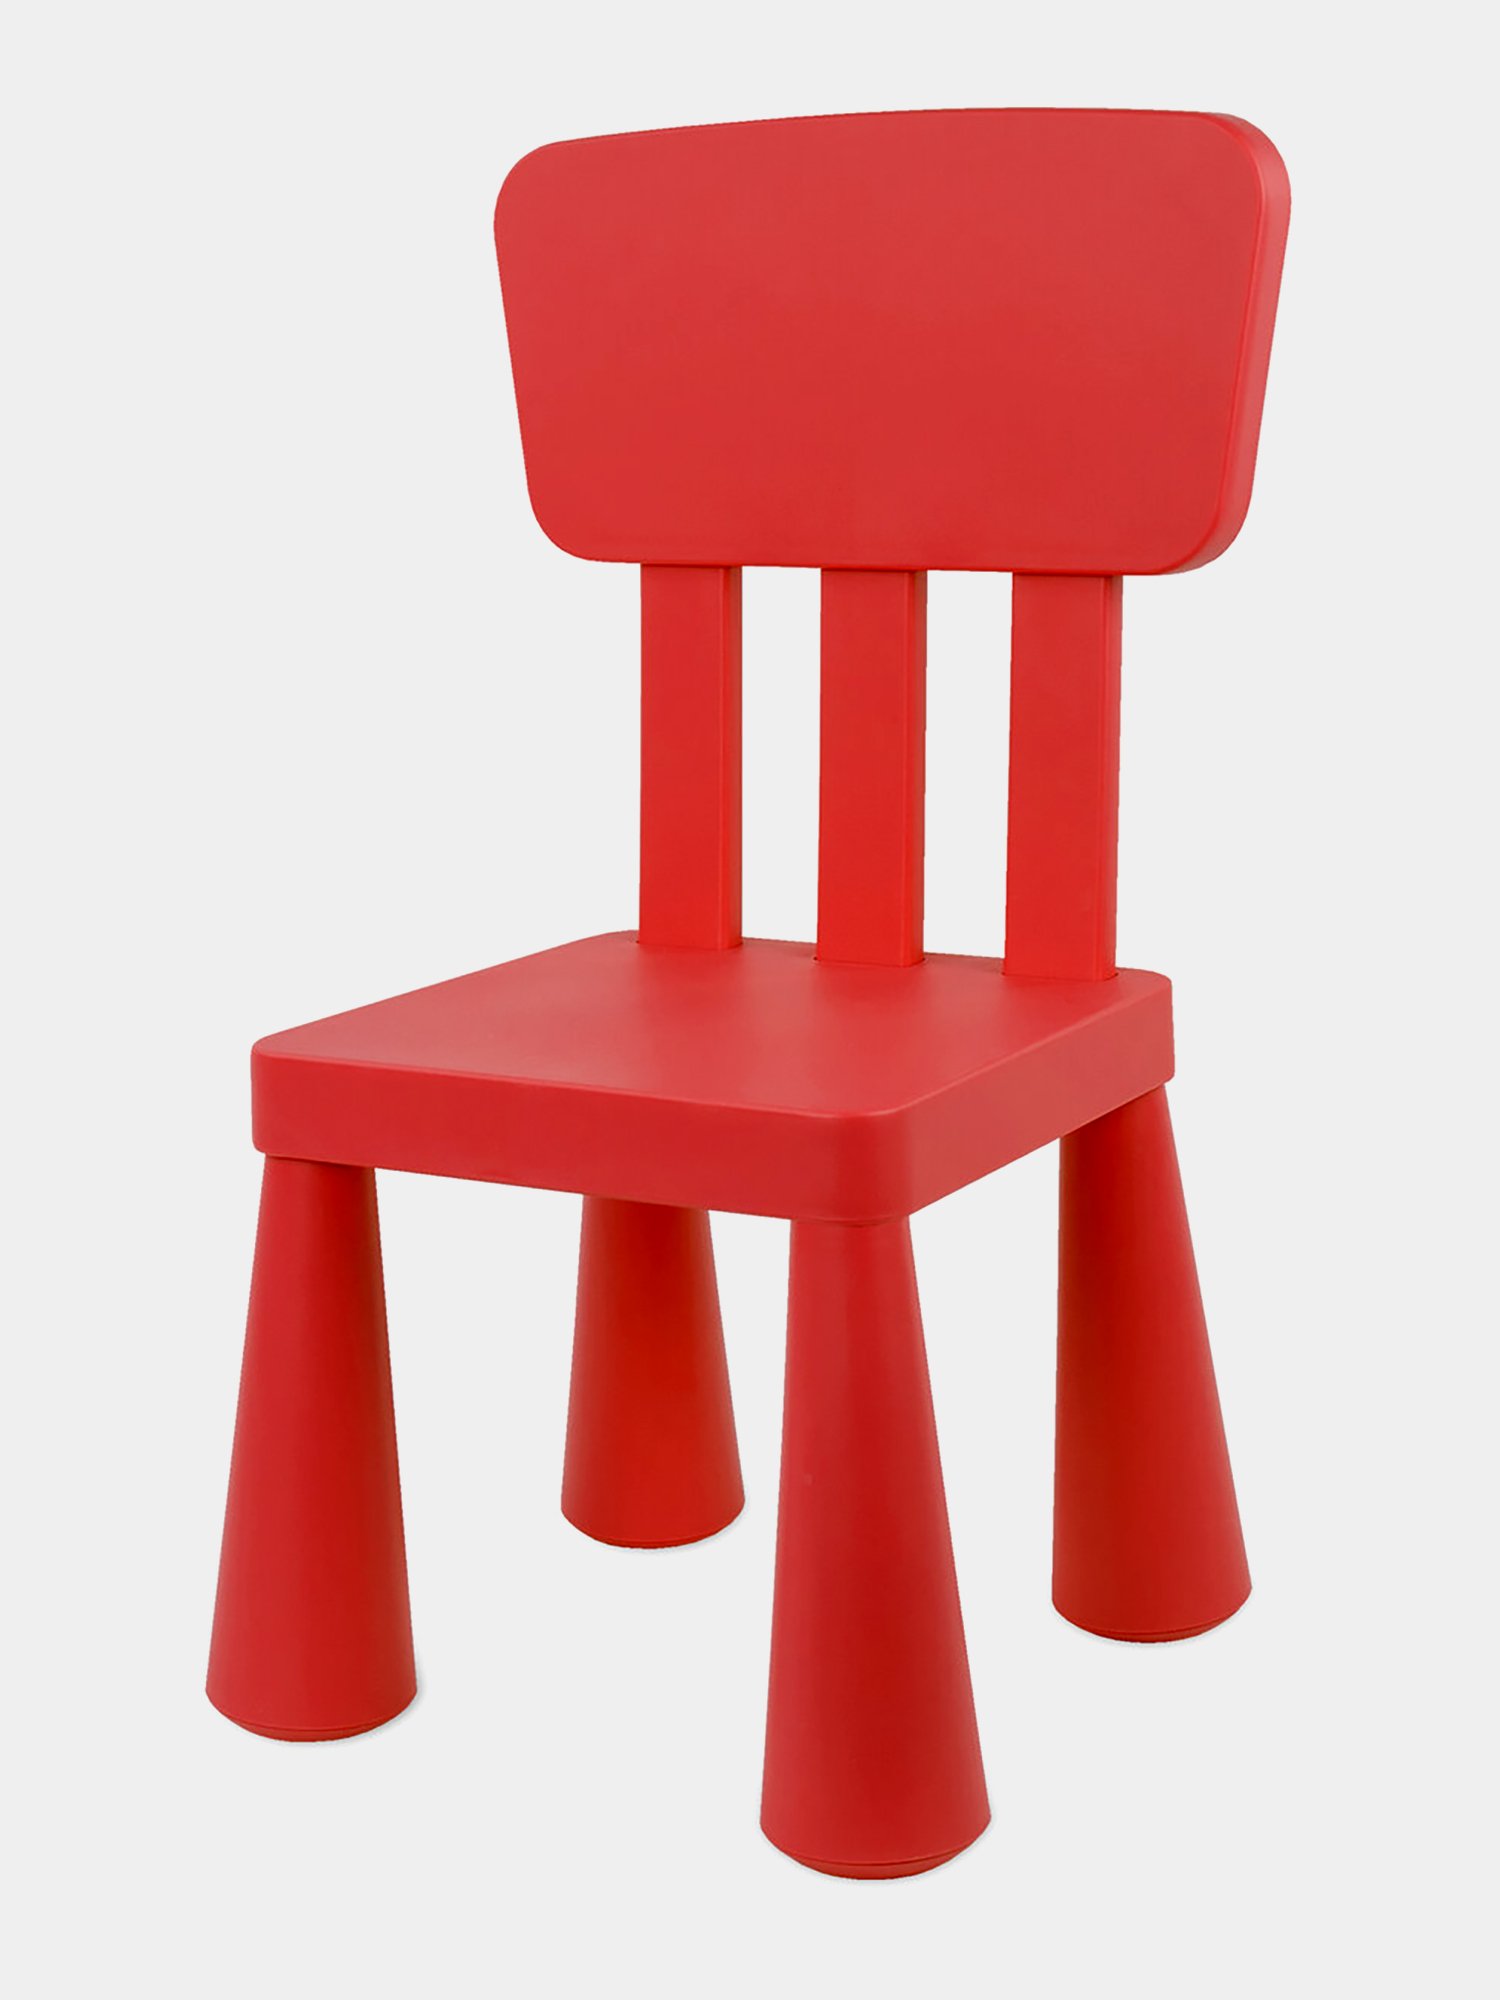 детский стульчик со спинкой пластиковый